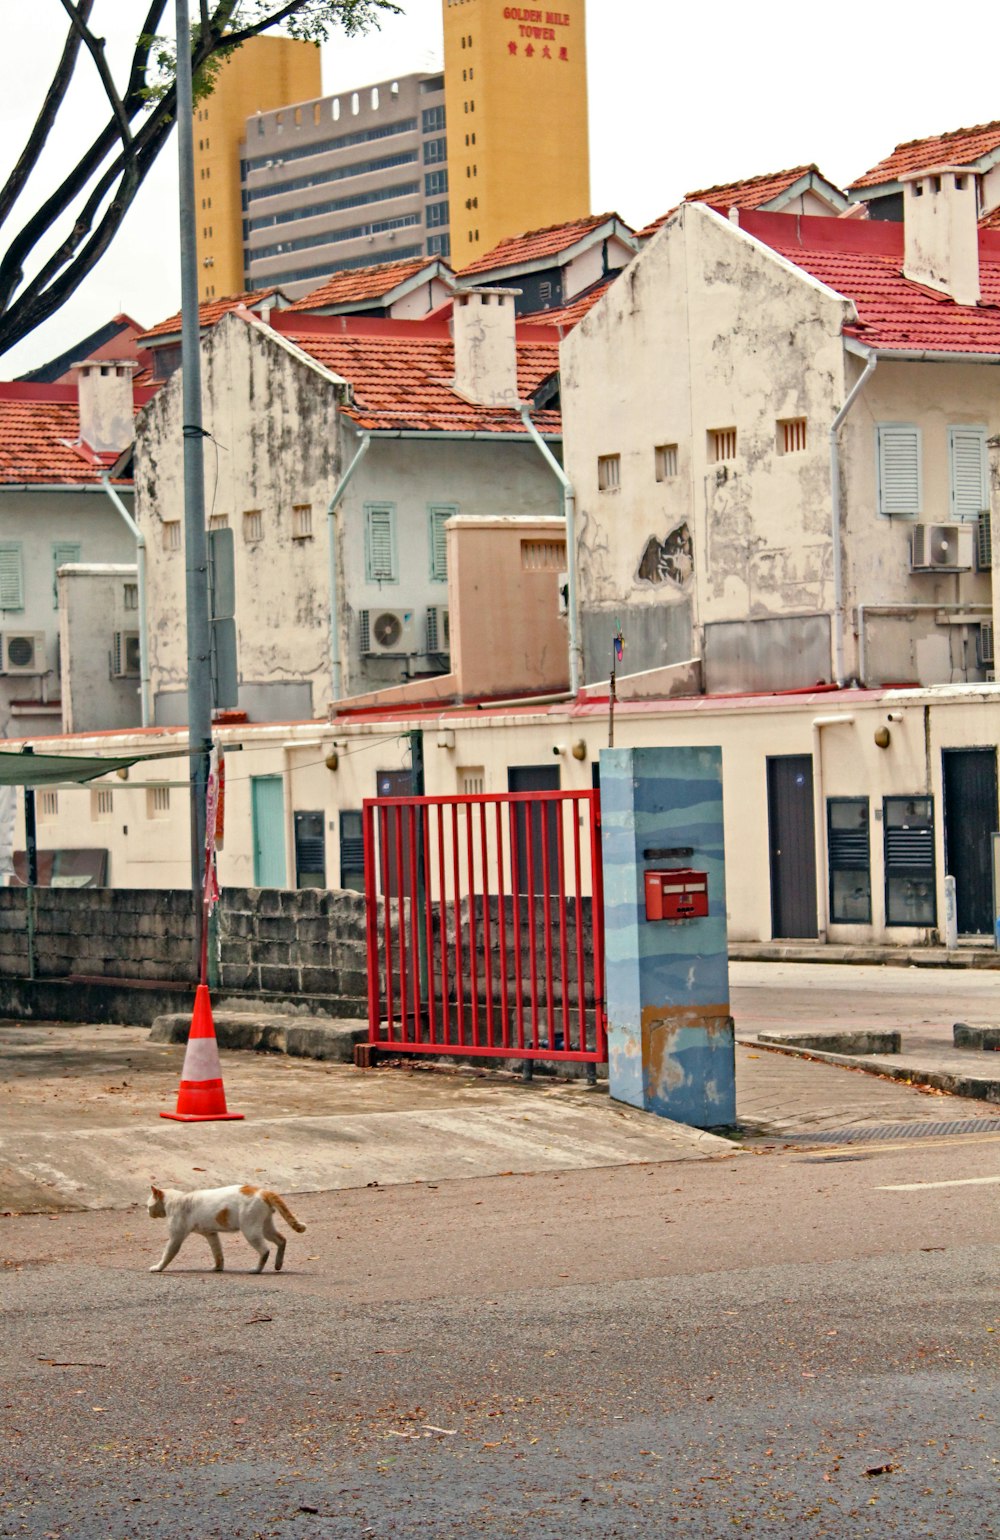 Weiß-brauner kurzhaariger Hund auf grauer Betonstraße tagsüber